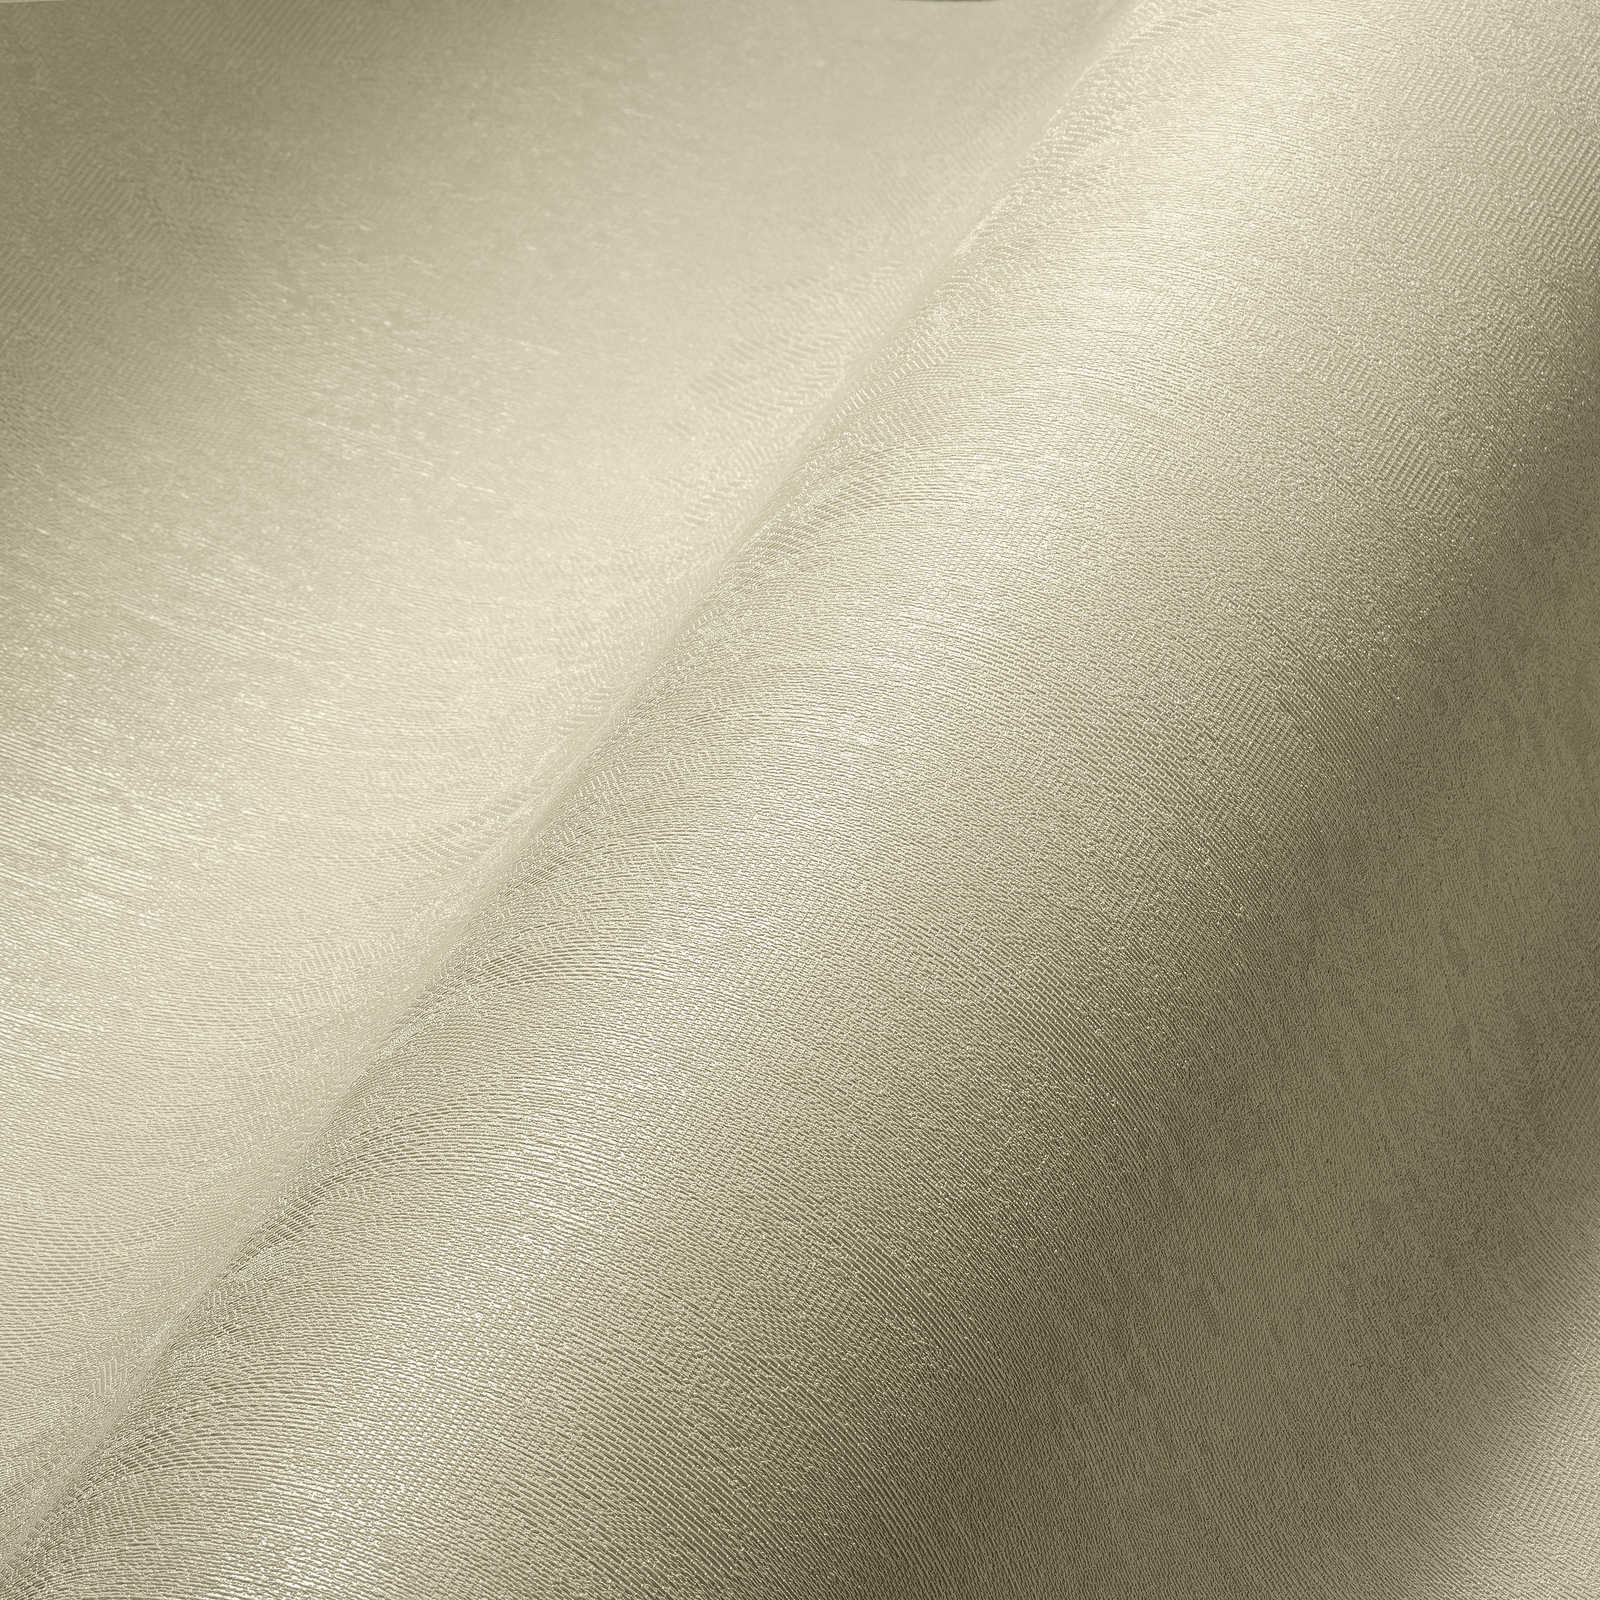             Neutraal eenheidsbehang met structuuroppervlak - crème
        